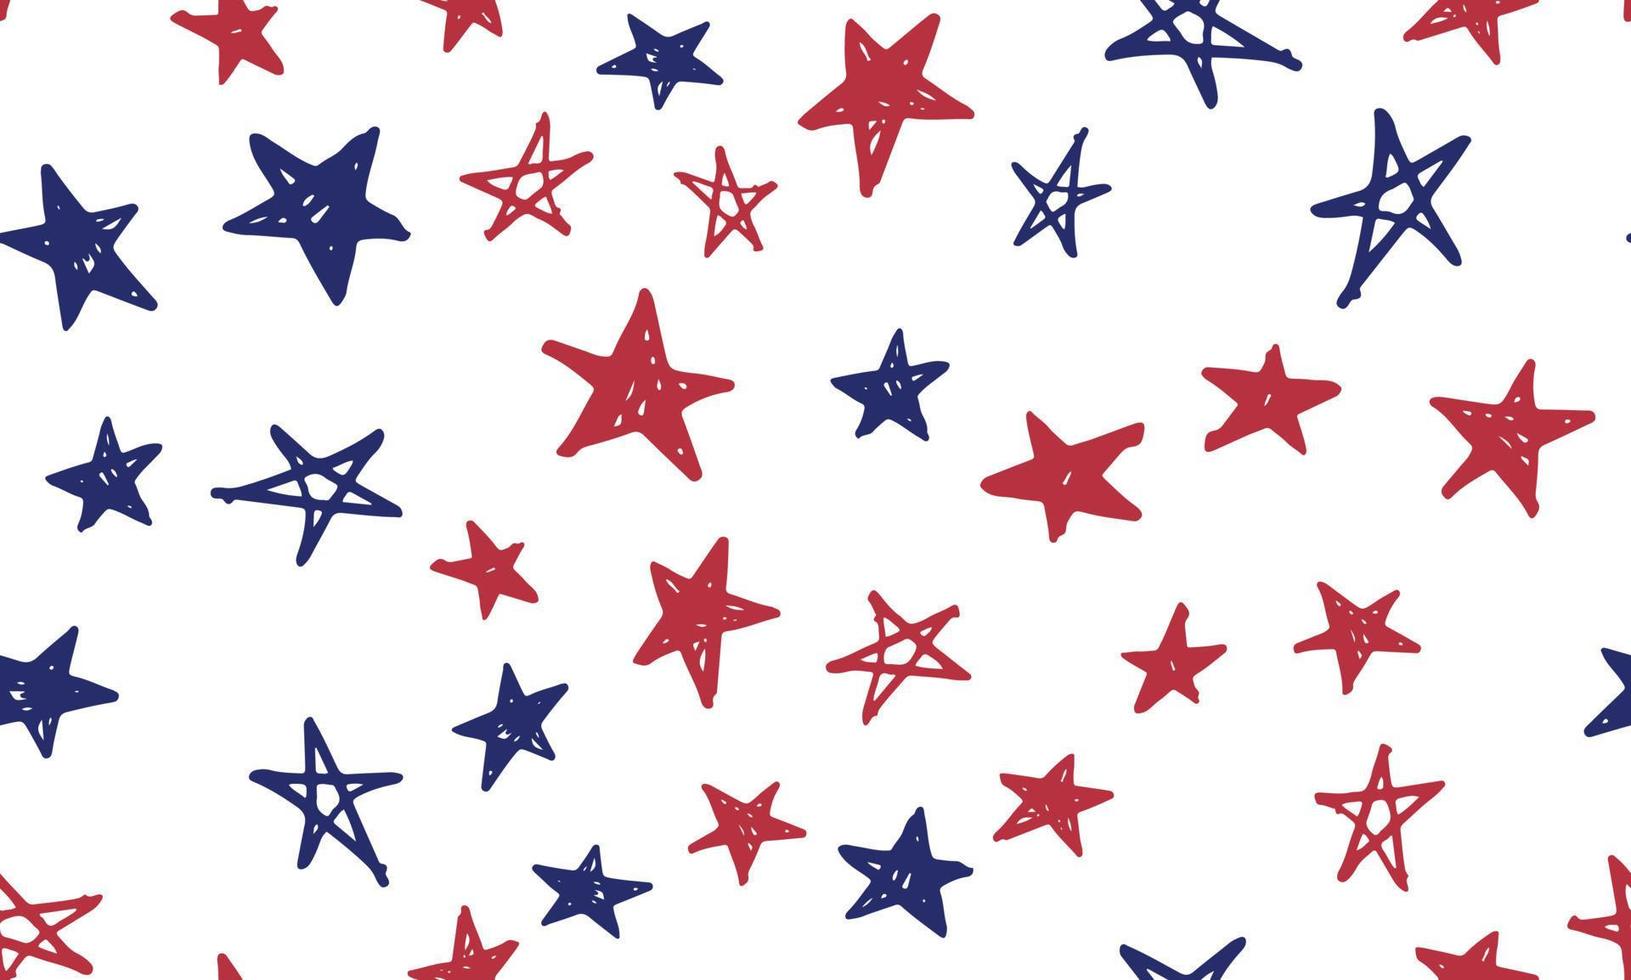 día de la independencia de estados unidos. día del Presidente. ilustración dibujada a mano. grunge de estrellas. vector